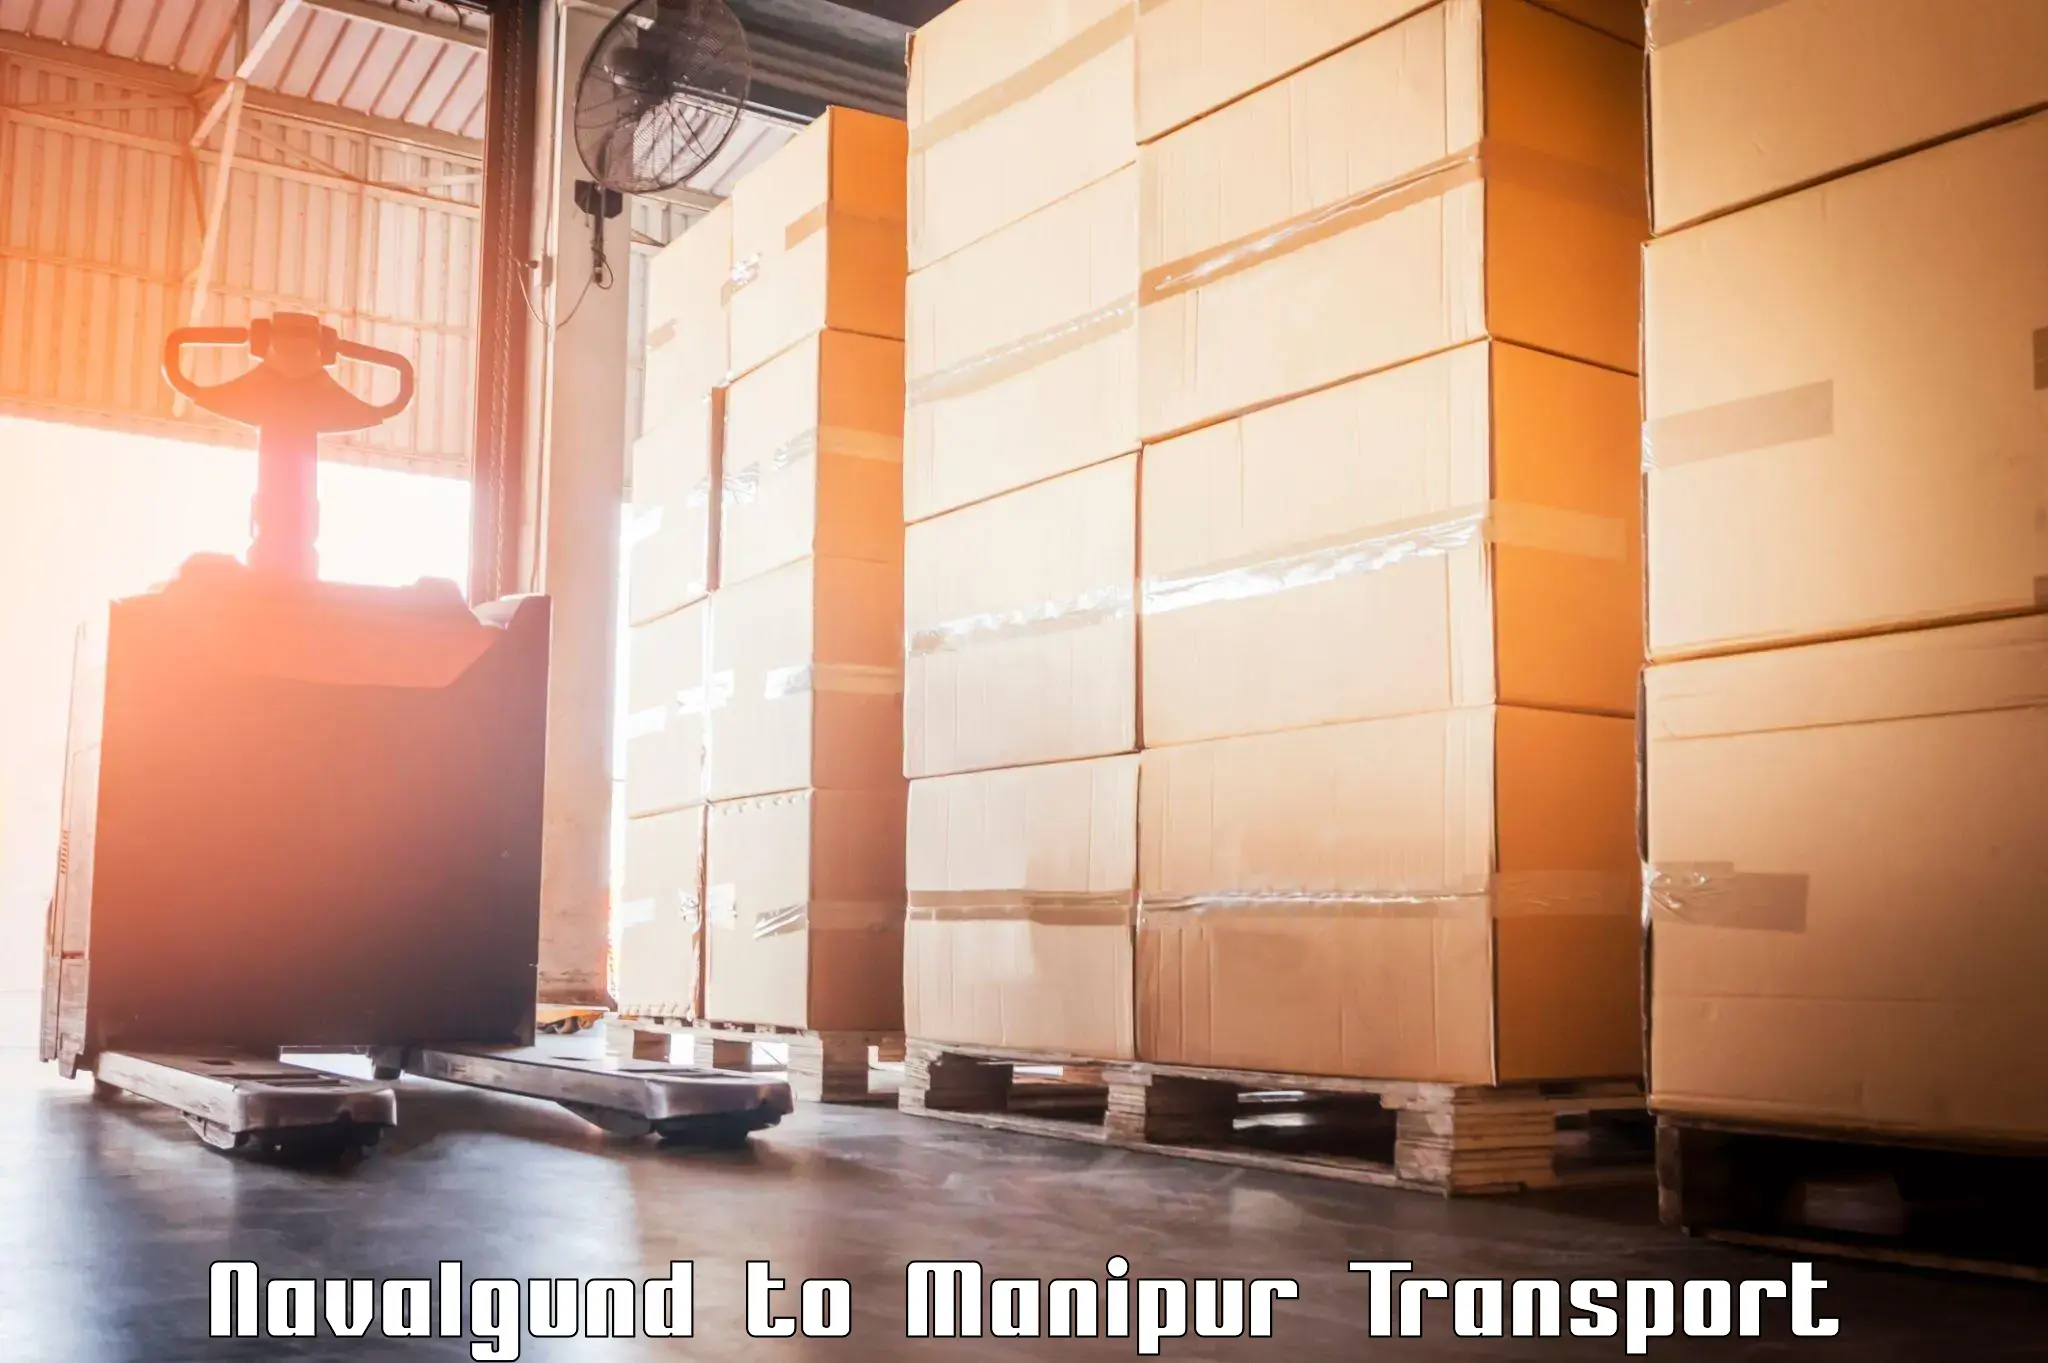 Road transport online services Navalgund to Churachandpur